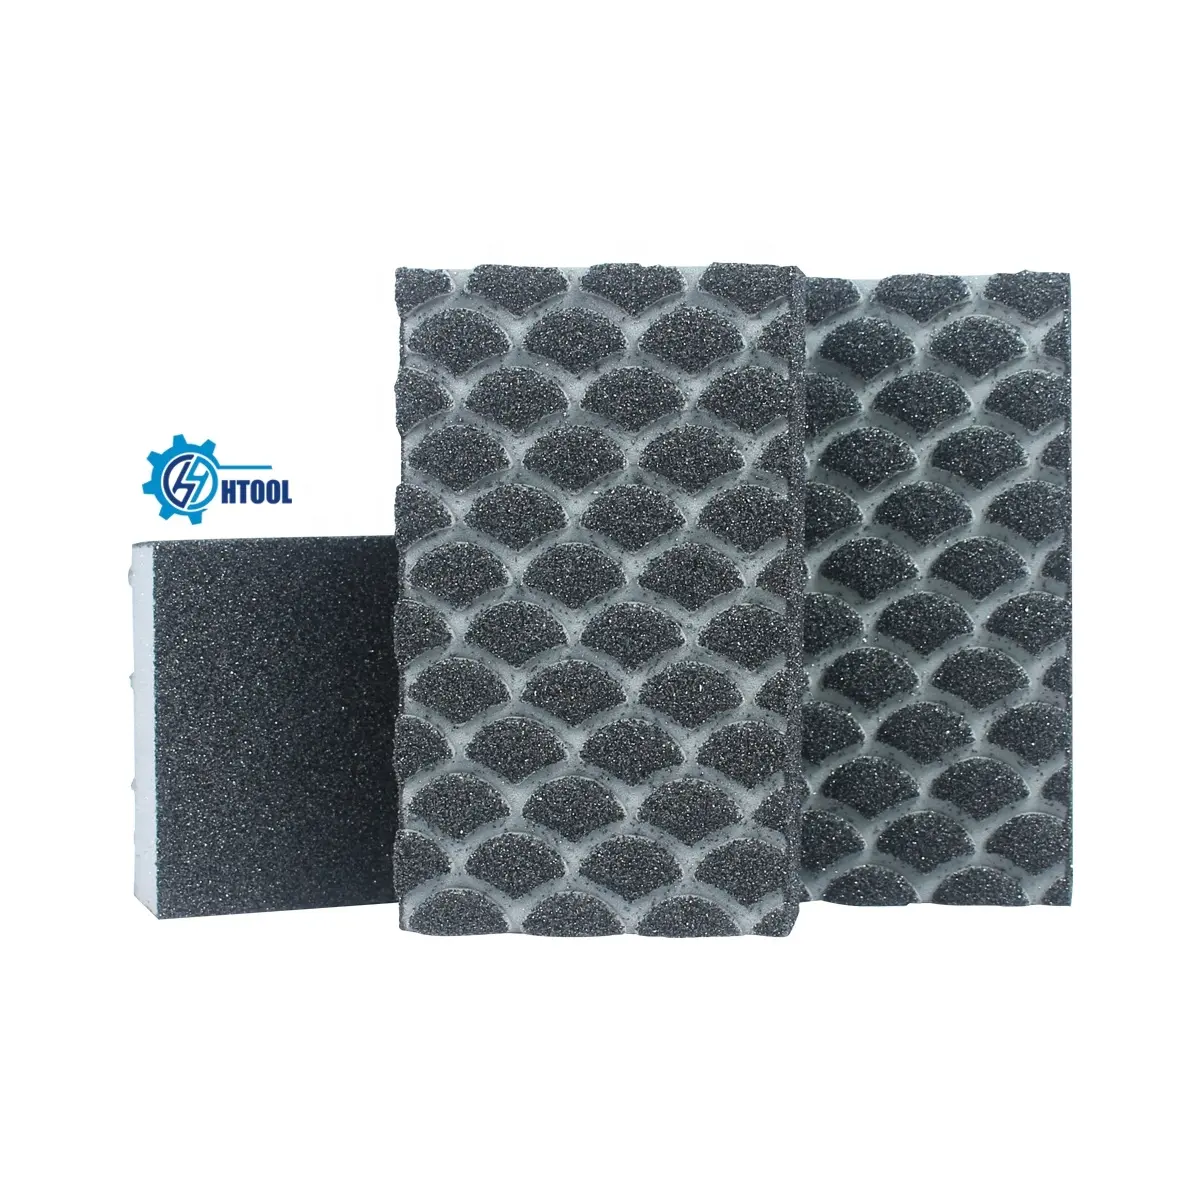 บล็อกขัดกระดาษทรายอะลูมิเนียมออกไซด์สีดำสี่ด้านเครื่องมือขัดสำหรับเปียกโดยใช้ขัด